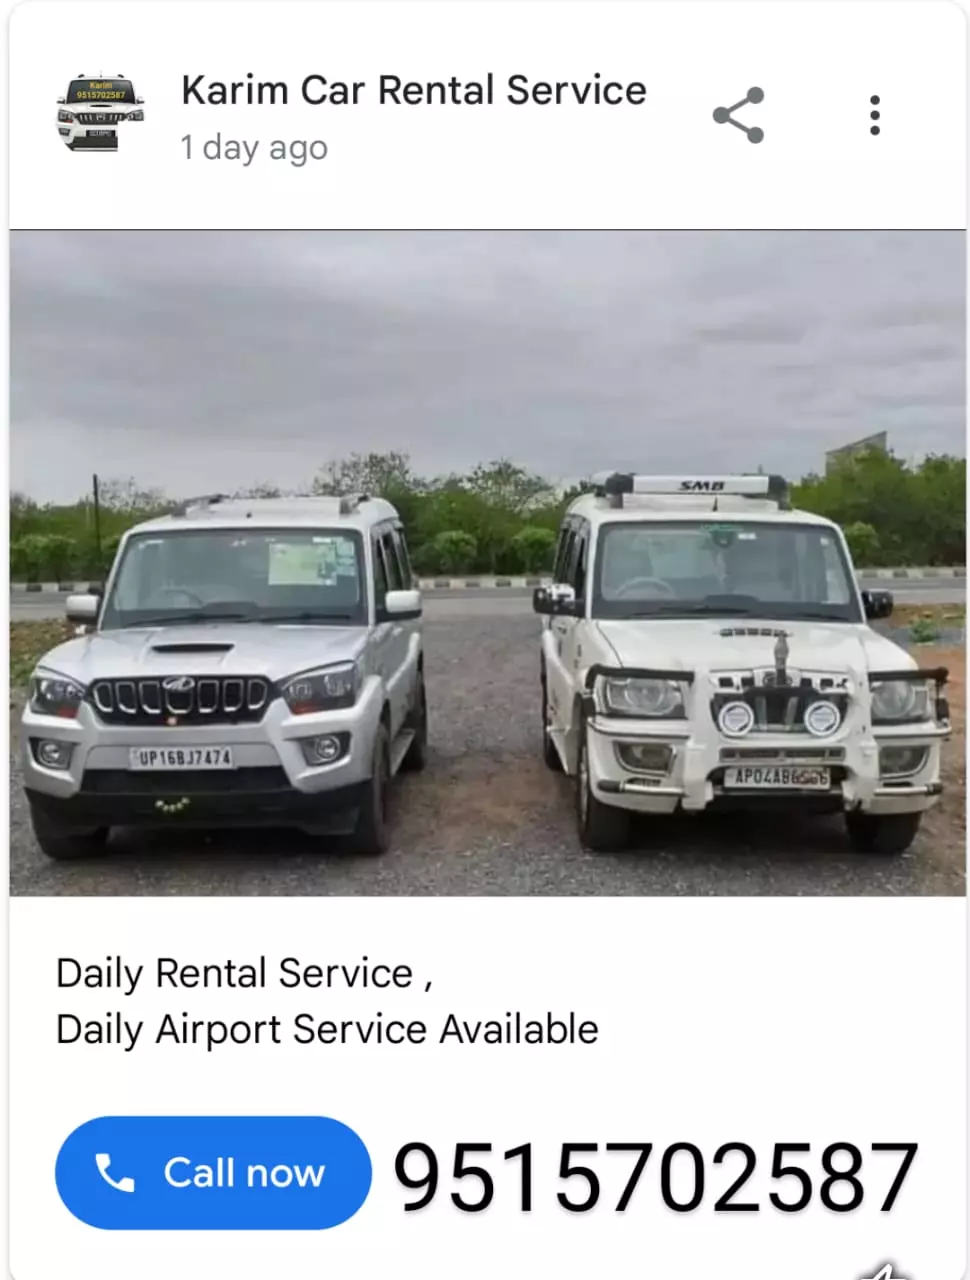 karim car rental service mydukur in kadapa - Photo No.2